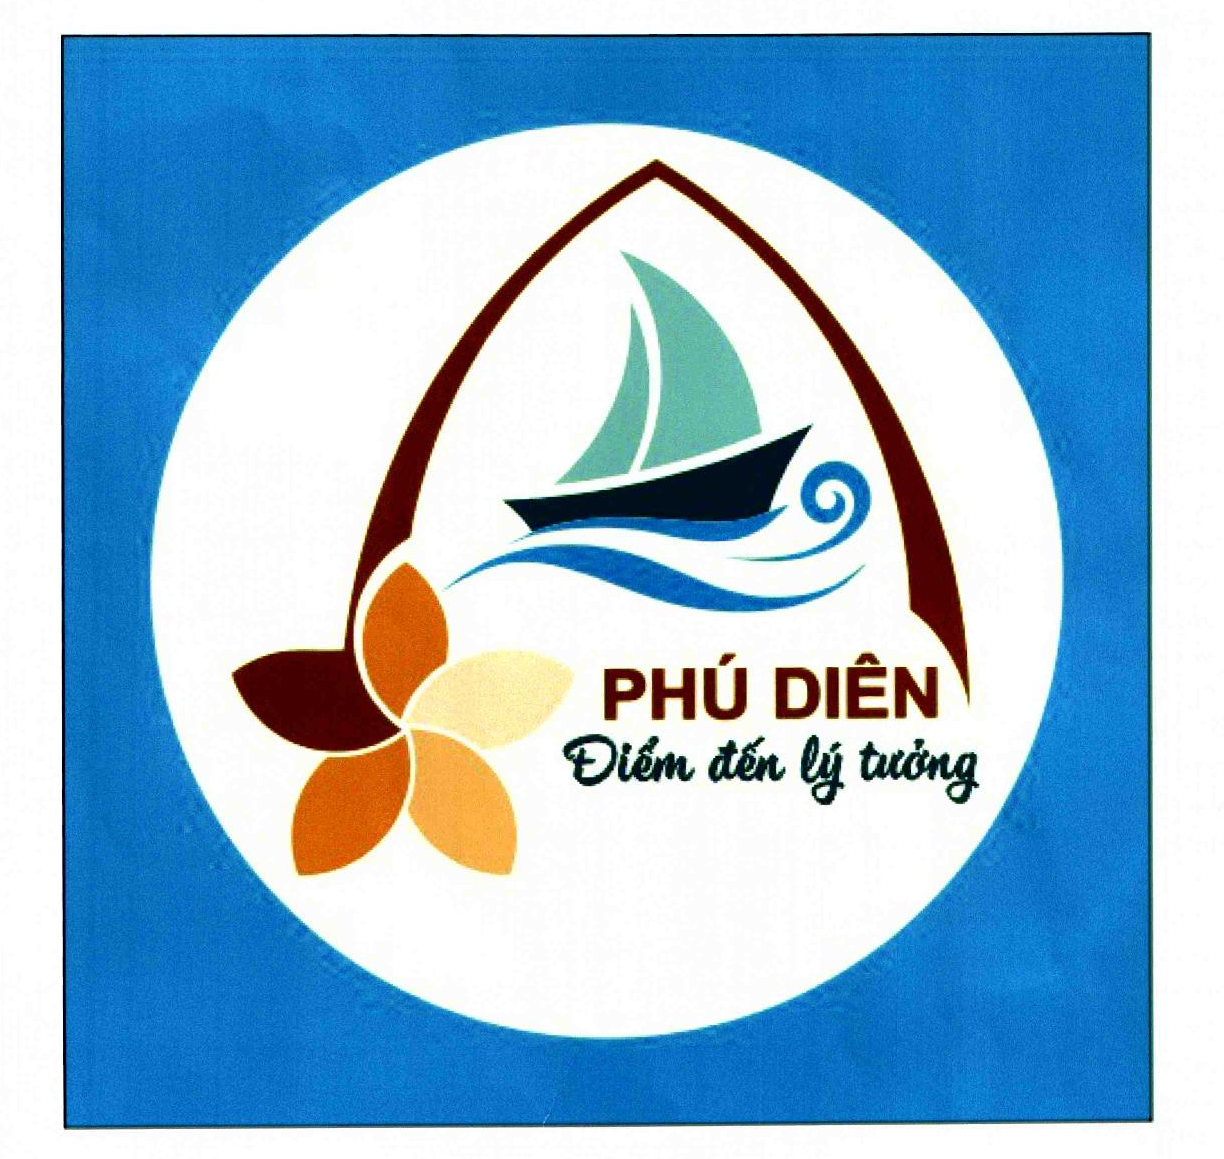 Thừa Thiên Huế: Xã Phú Diên công bố logo và slogan để quảng bá hình ảnh Tháp Chăm và Bãi tắm Phú Diên